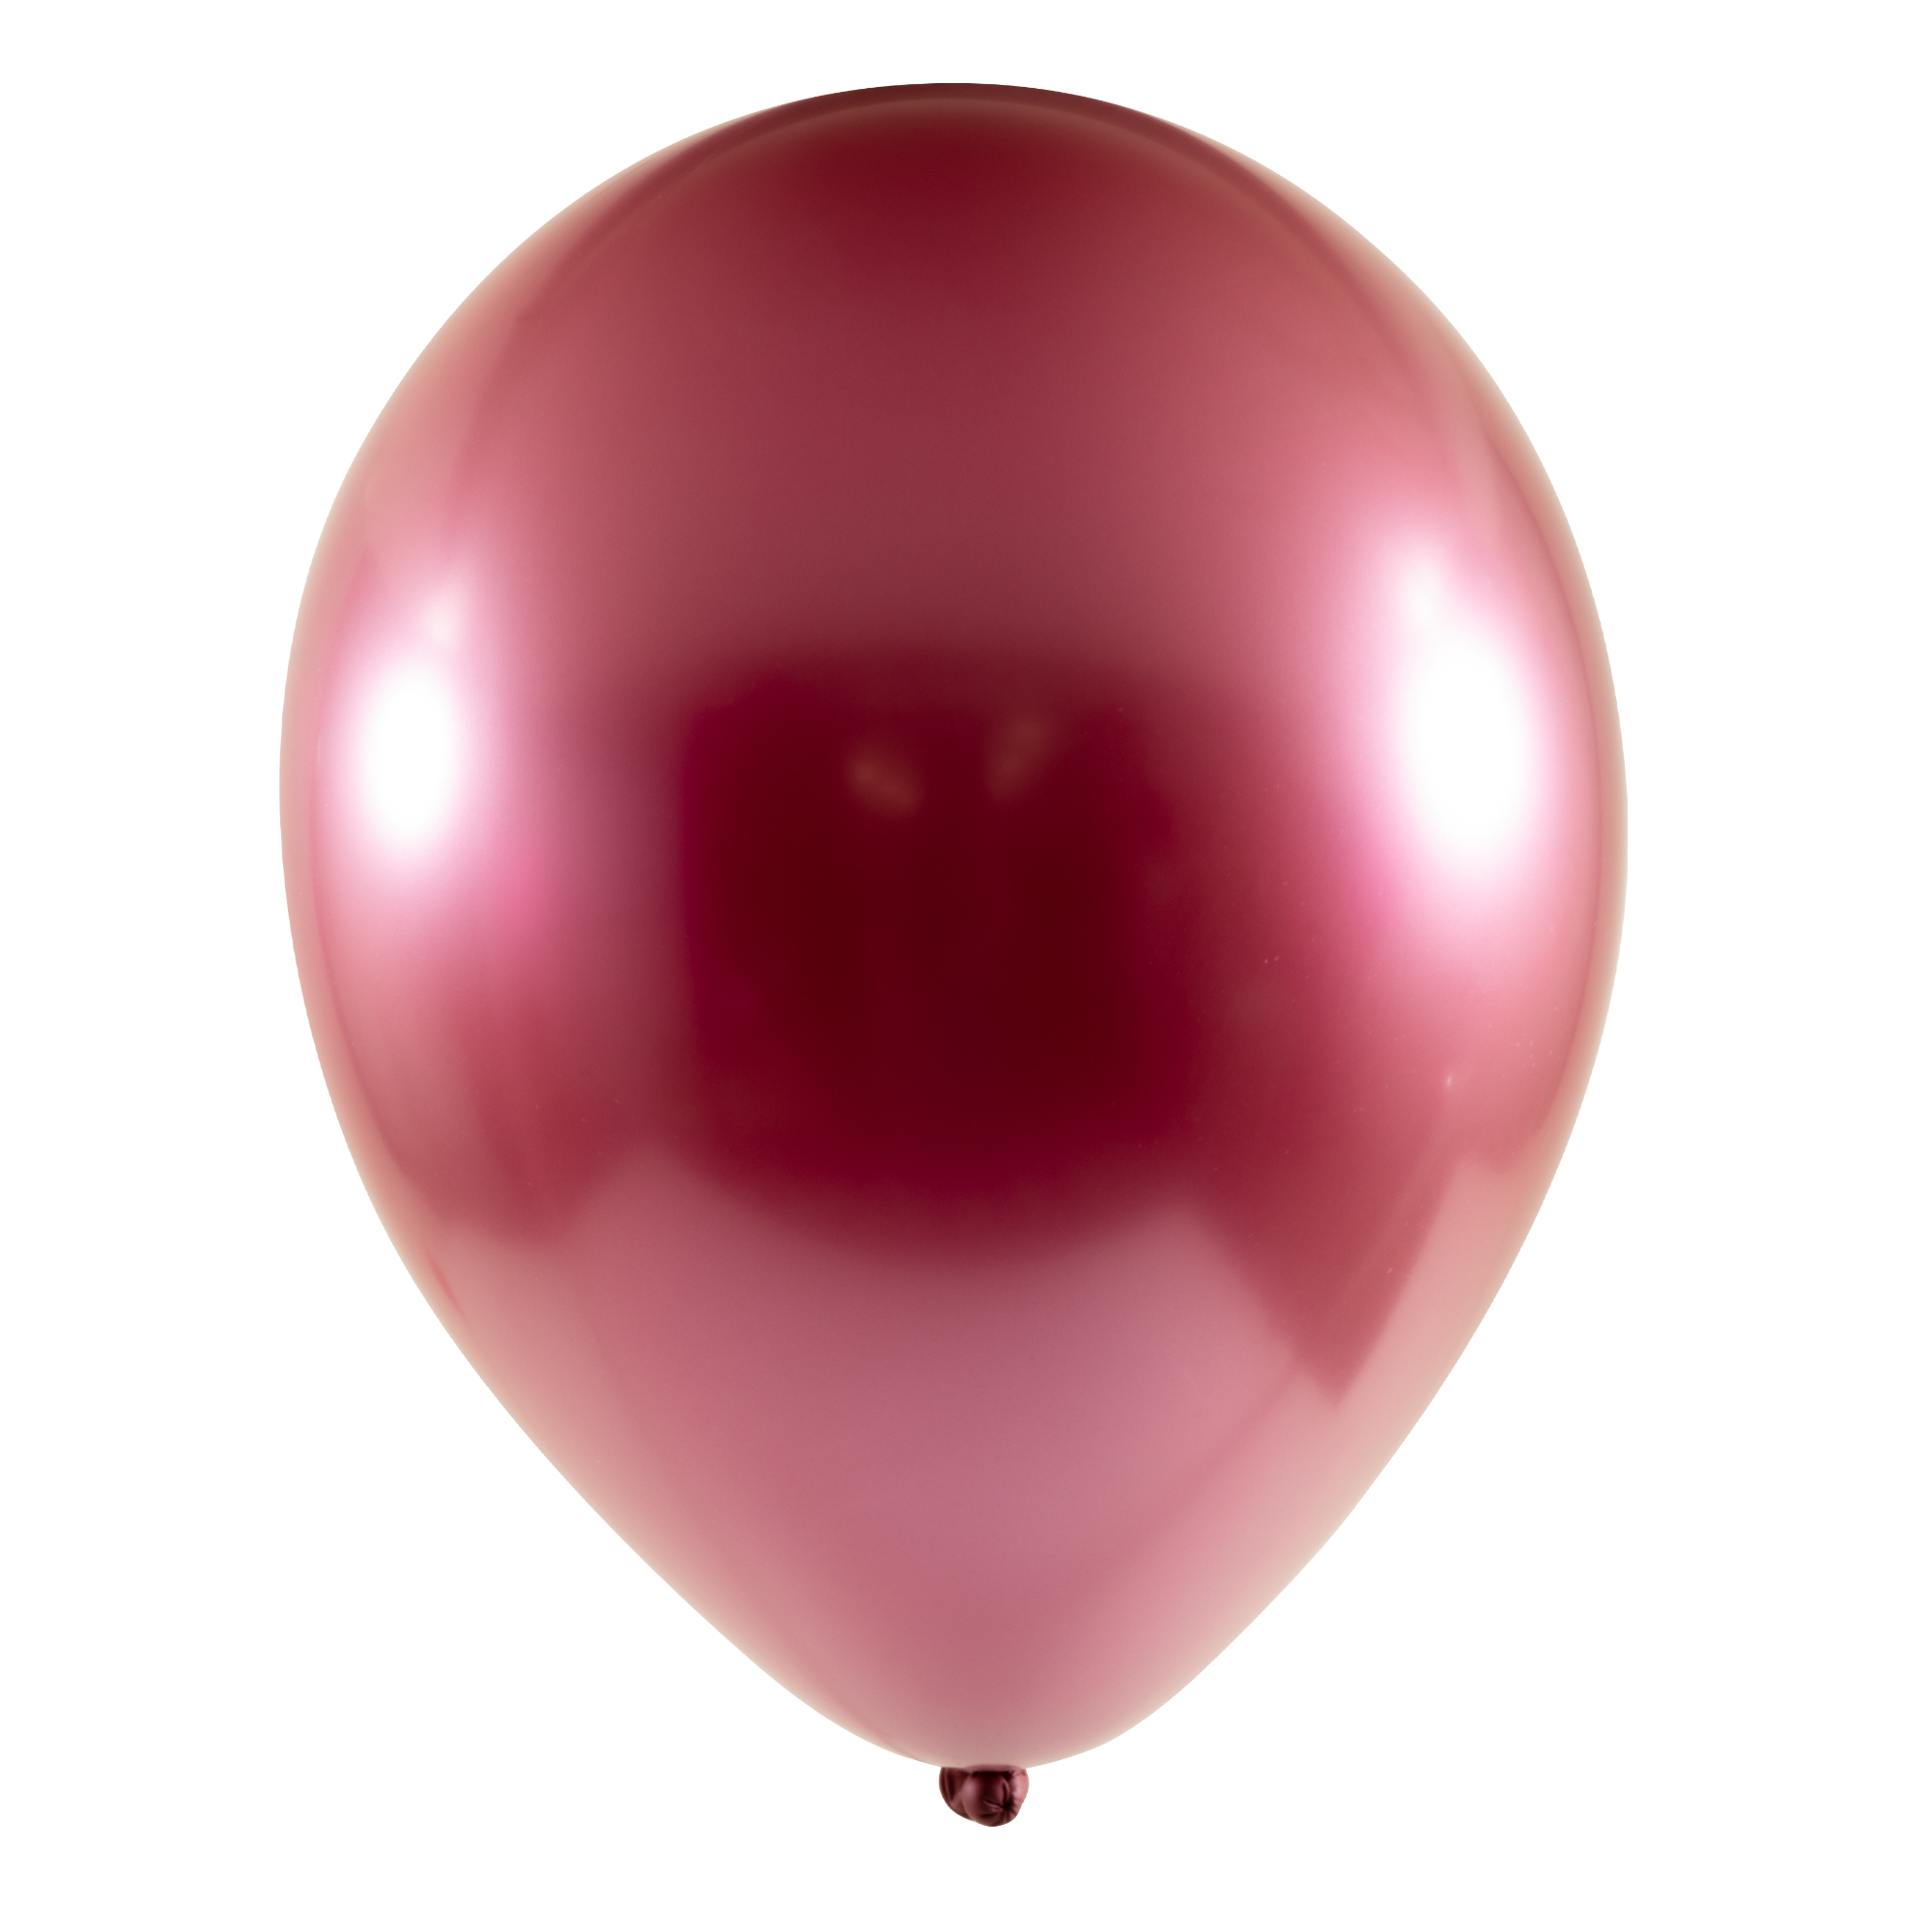 Chrome Latex Balloon 12" 50pc/bag - Red